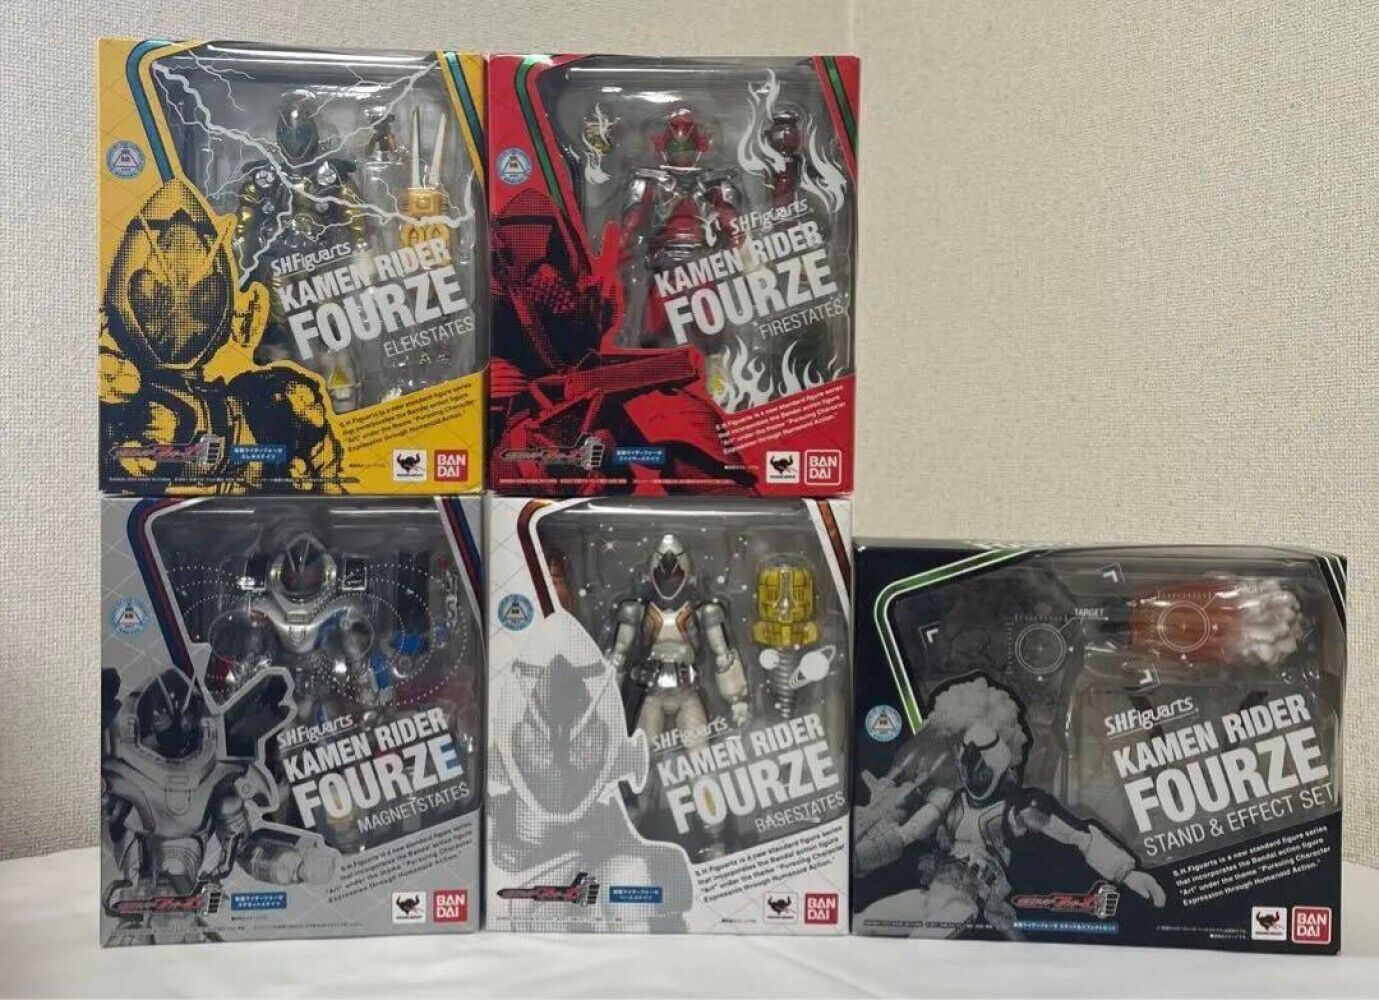 S.H.Figuarts Kamen Rider Fourze Action Figure & Stand Effects set 8piece set New